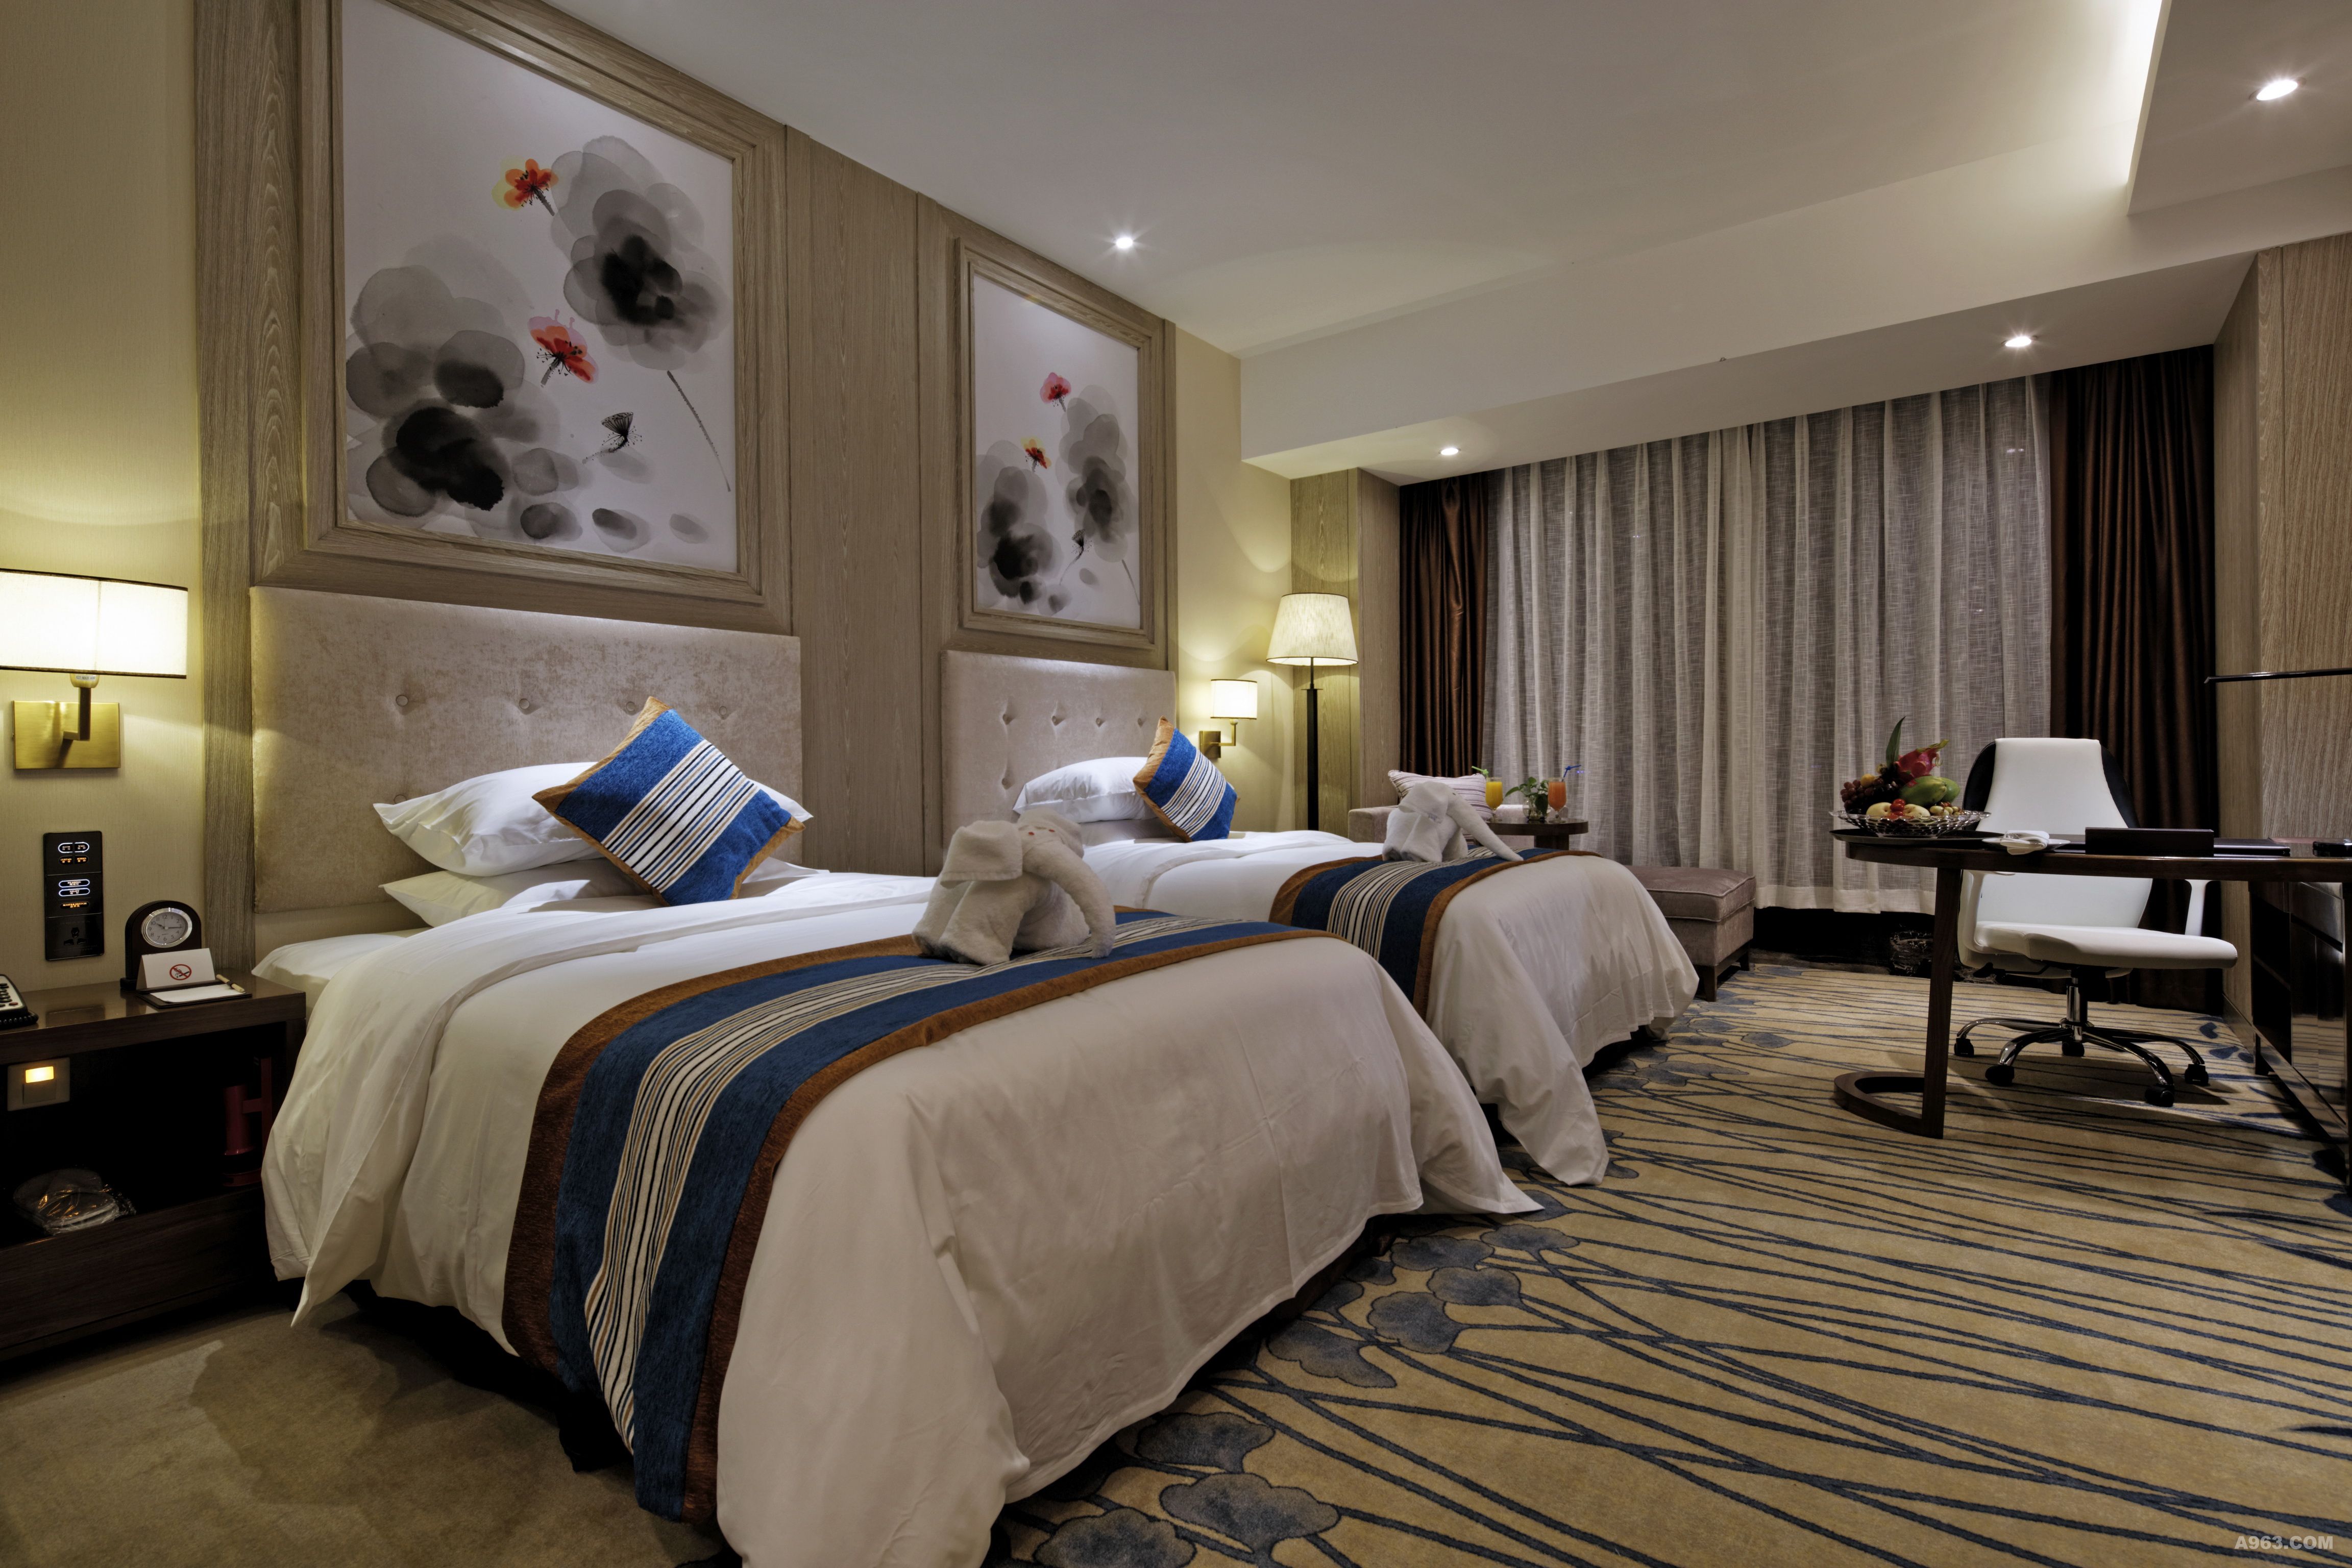 作为安顺首家五星级酒店,本项目投入使用以来提升了本地酒店的标准